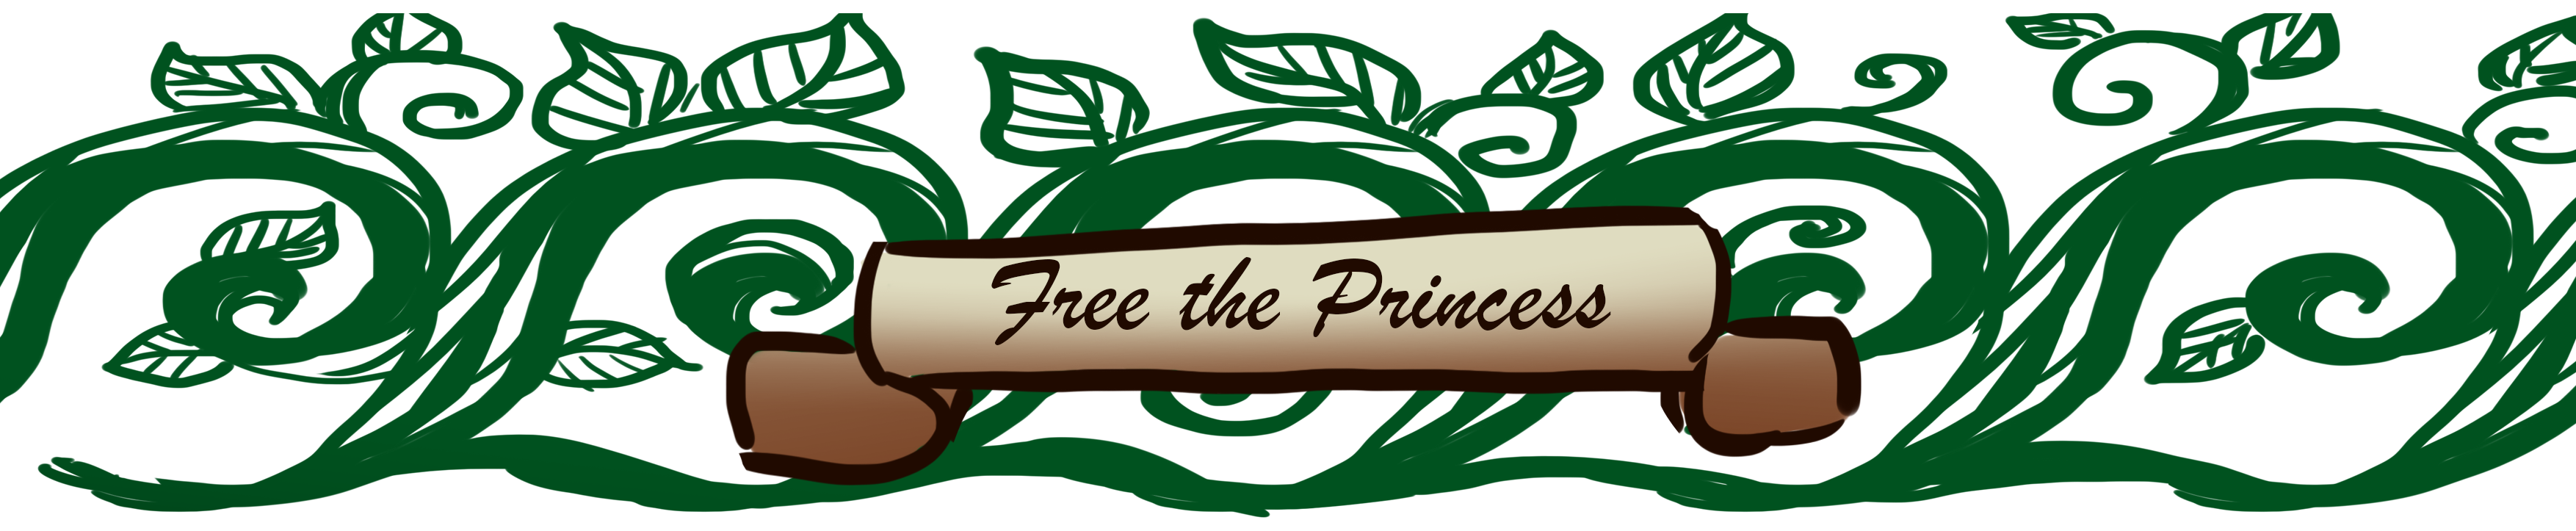 Free the Princess